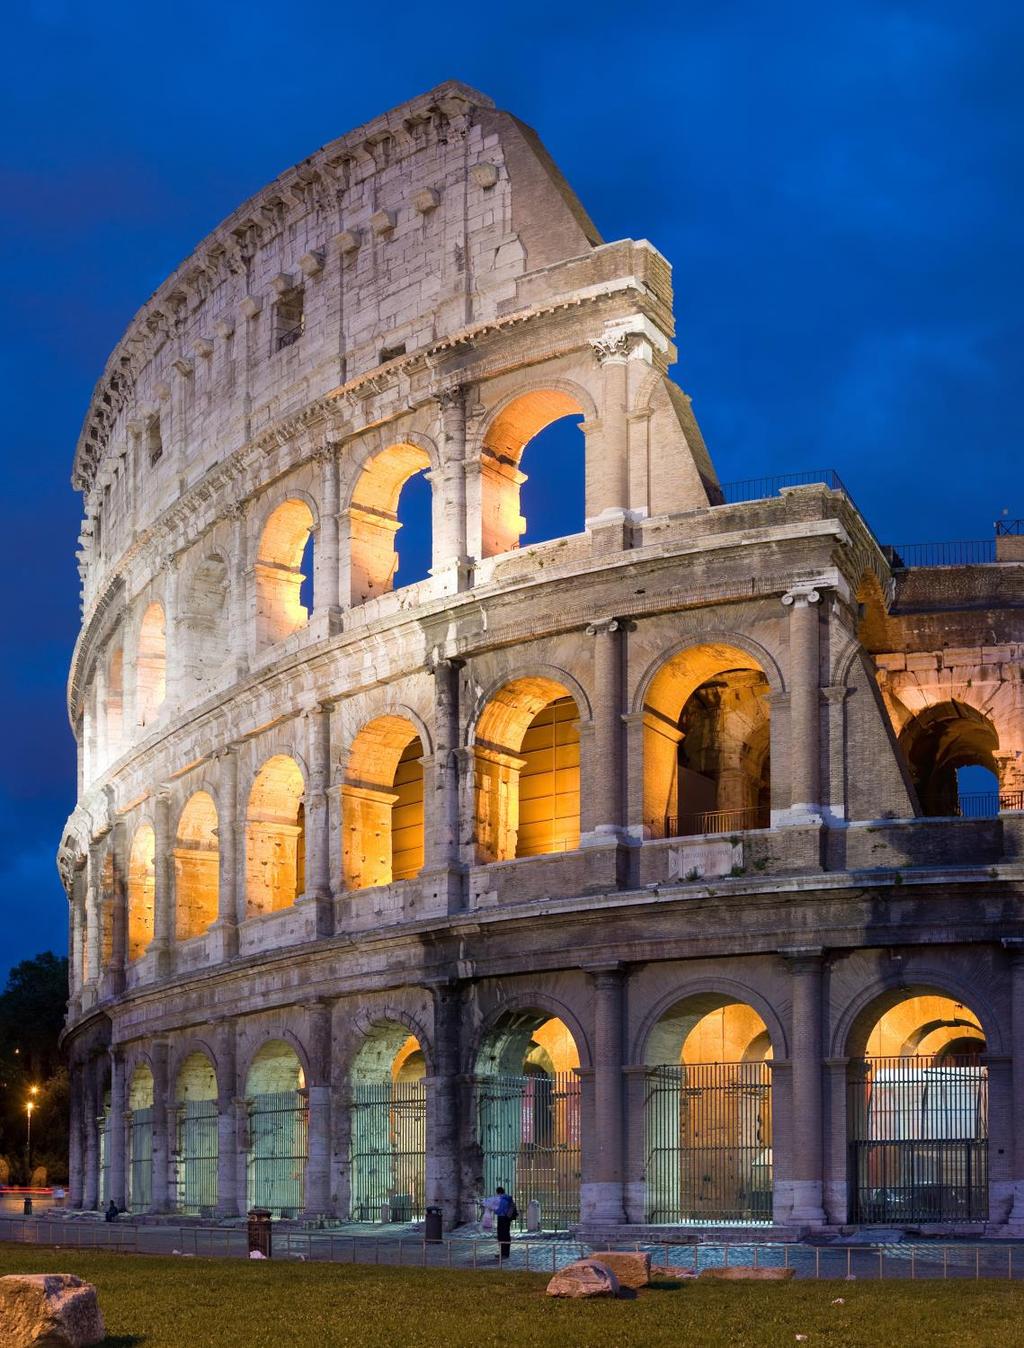 Řím, Itálie Kurzový rozdíl valut činí od 8% do 17% Poplatek při nákupu valut se pohybuje kolem 20% Dohromady kurzový